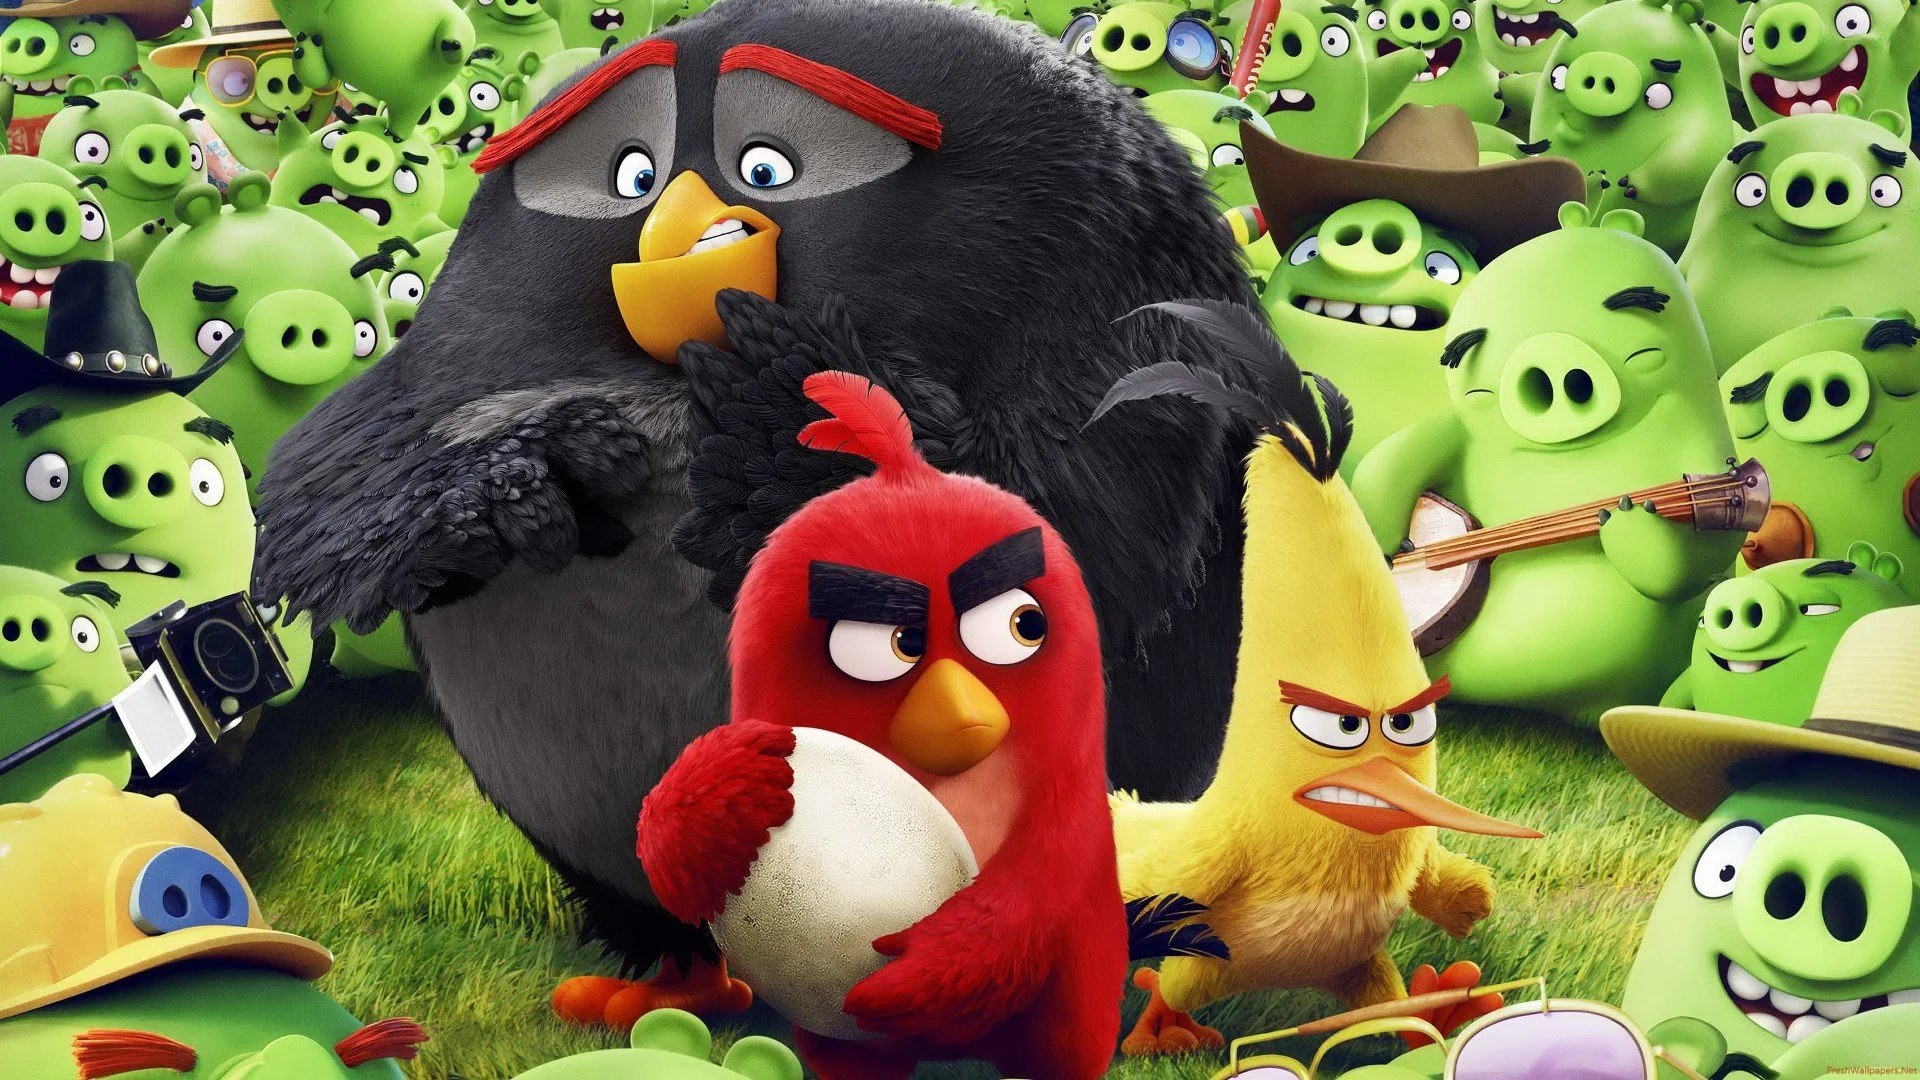 12 мая в российском кинопрокате стартовали «Angry Birds в кино», экранизация финской игры, давно ставшей лицом мобильного гейминга. Все мы в нее играли, никто до безумия в нее не влюблялся, фильма тоже никто в общем-то не просил, но если есть продукт, узнаваемый миллионами, то он неизбежно мутирует в фильмы, игрушки, хлопья и так далее. Это вам скажет любой маркетолог, если вы зачем-то будете с ним разговаривать. 